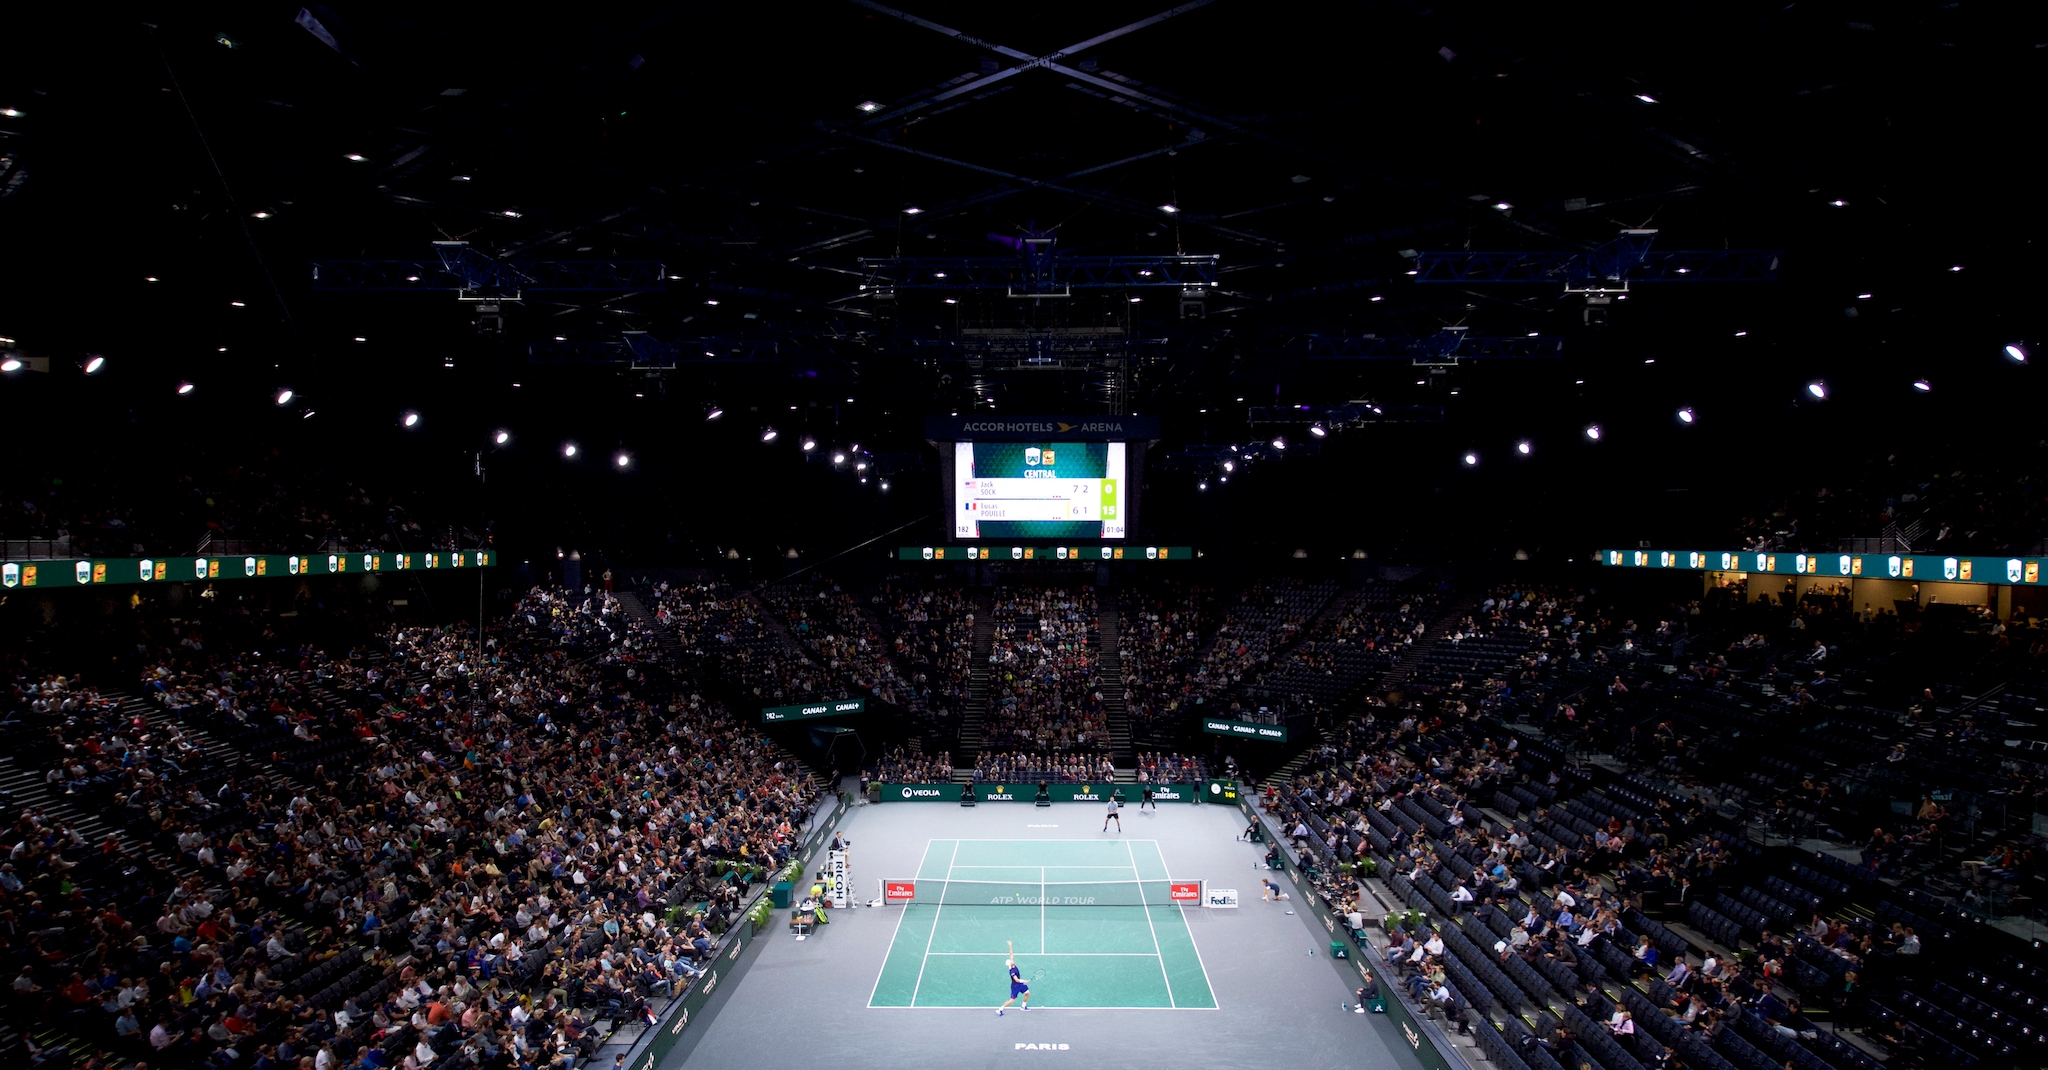 Photo: paris rolex masters tennis